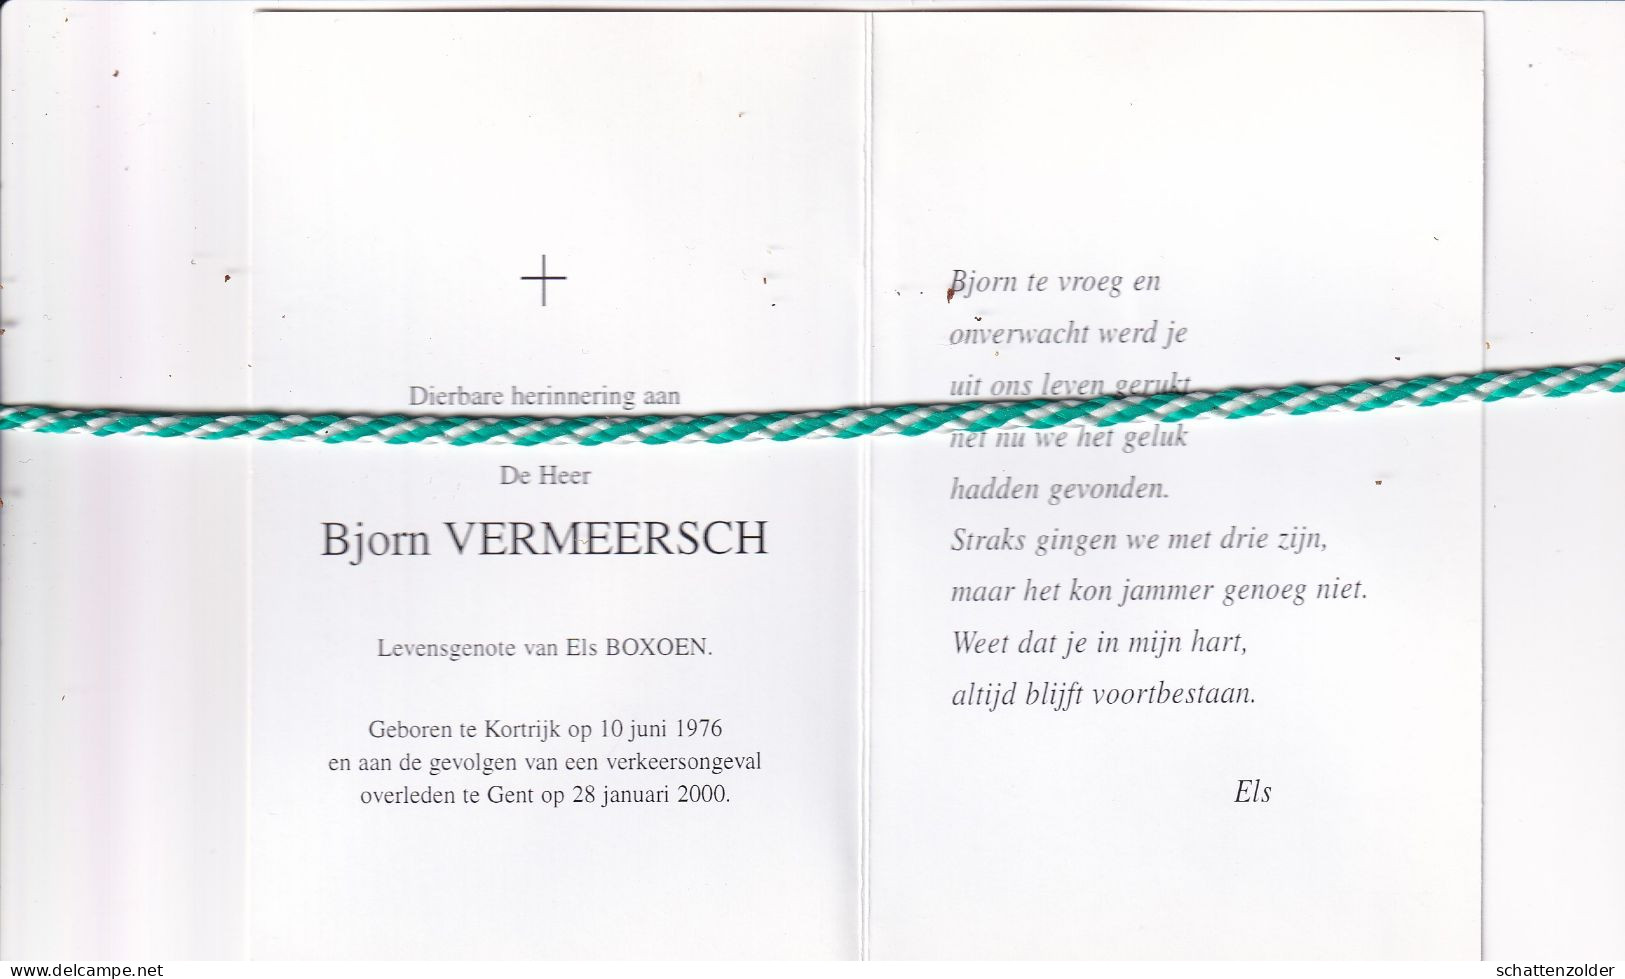 Bjorn Vermeersch-Boxoen, Kortrijk 1976, Gent 2000. Foto - Décès